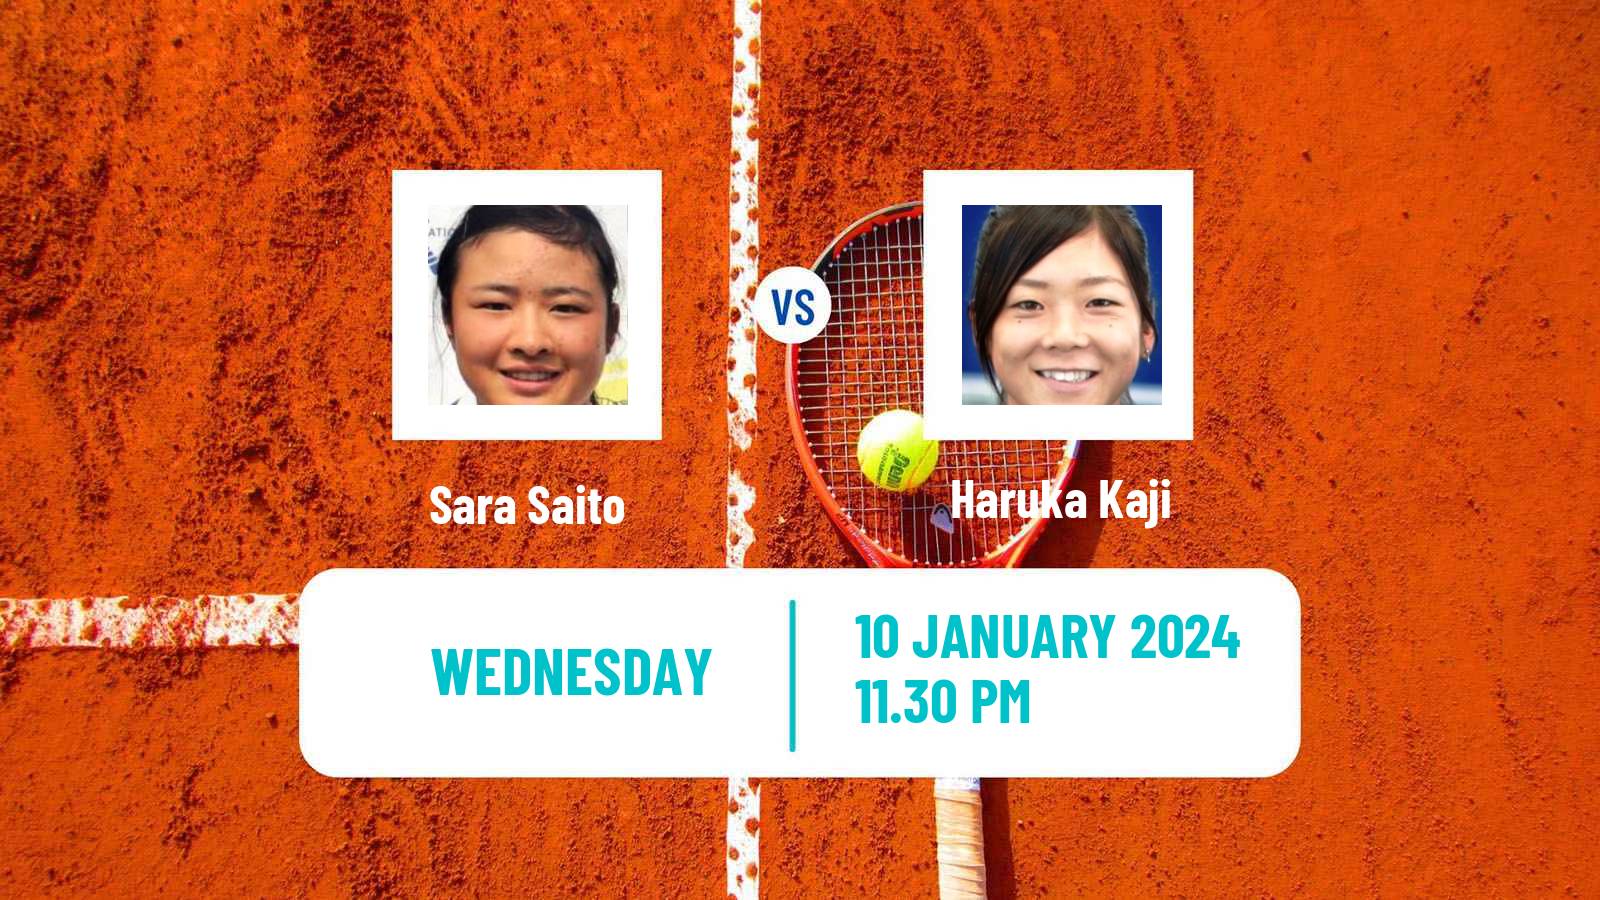 Tennis ITF W50 Nonthaburi 2 Women Sara Saito - Haruka Kaji